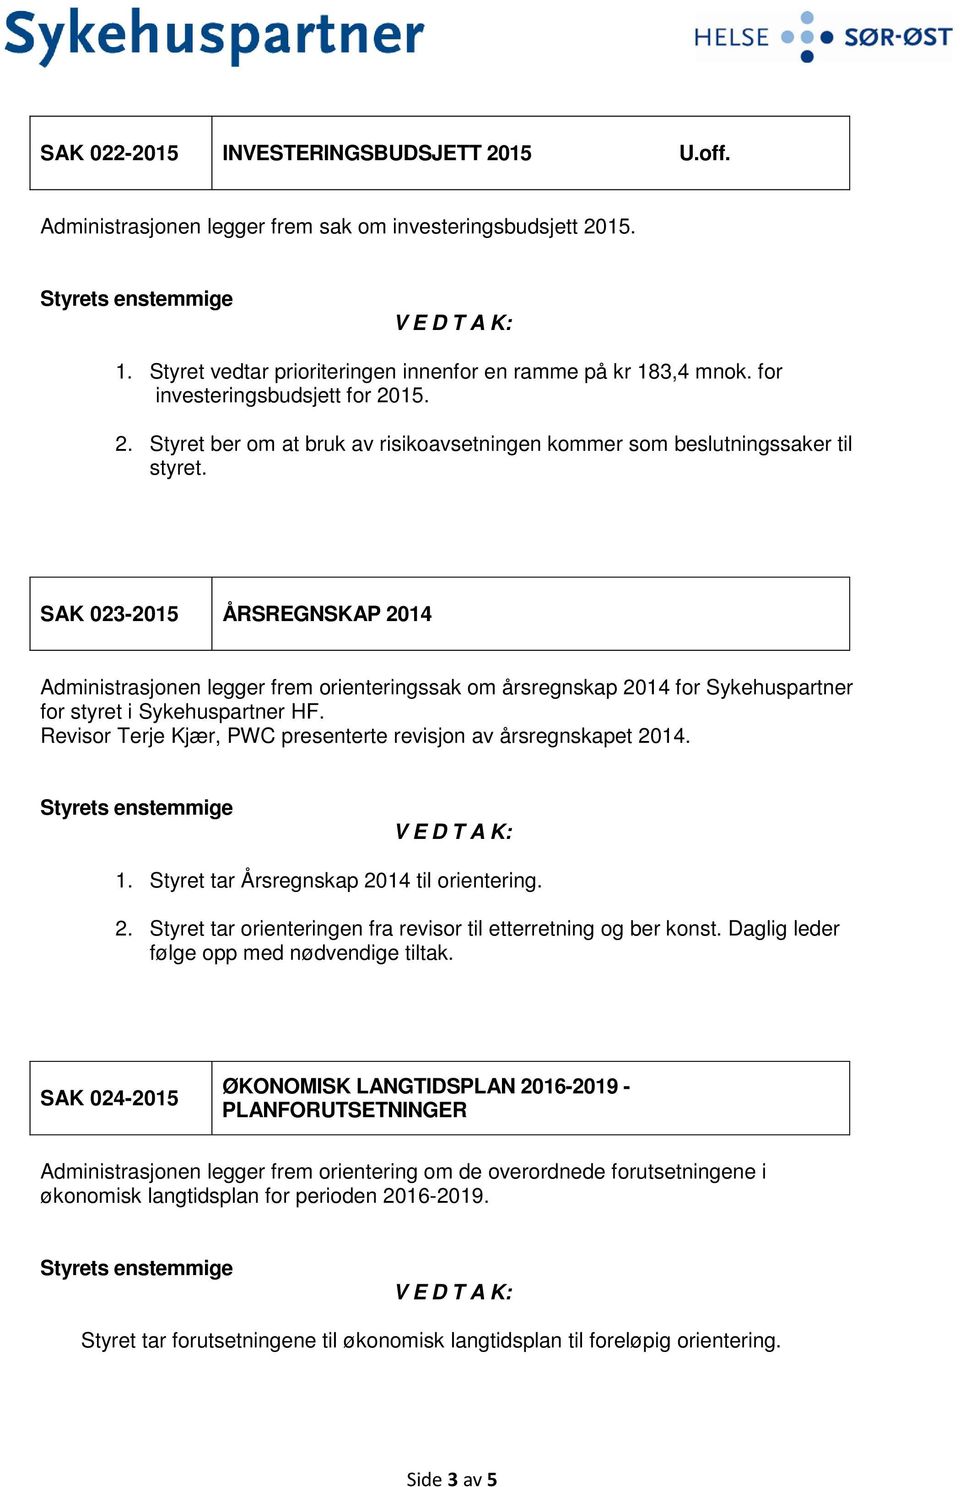 SAK 023-2015 ÅRSREGNSKAP 2014 Administrasjonen legger frem orienteringssak om årsregnskap 2014 for Sykehuspartner for styret i Sykehuspartner HF.